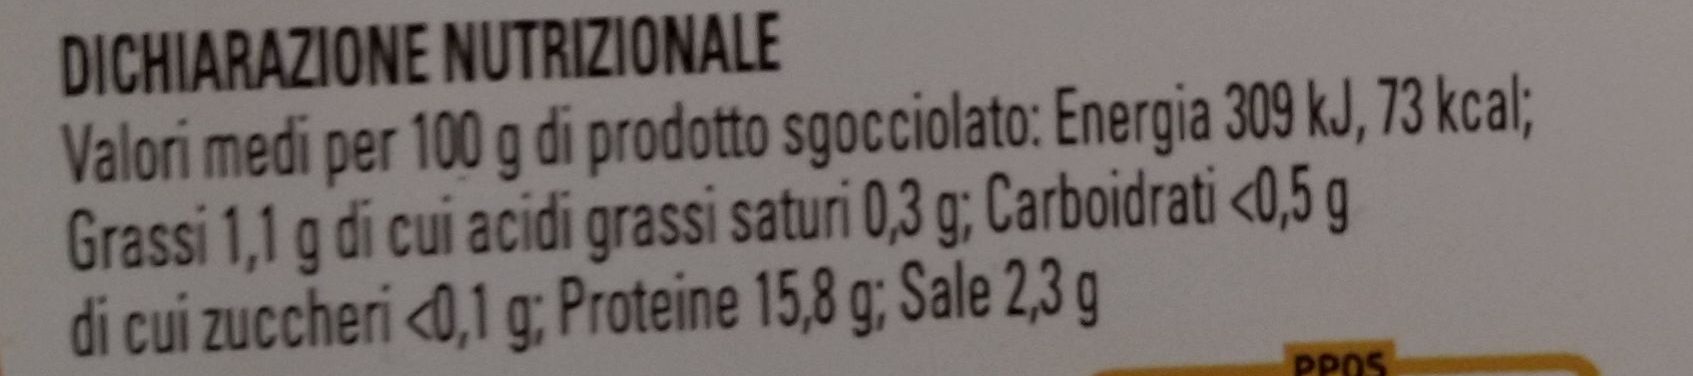 Gamberetti in salamoia - Voedingswaarden - it